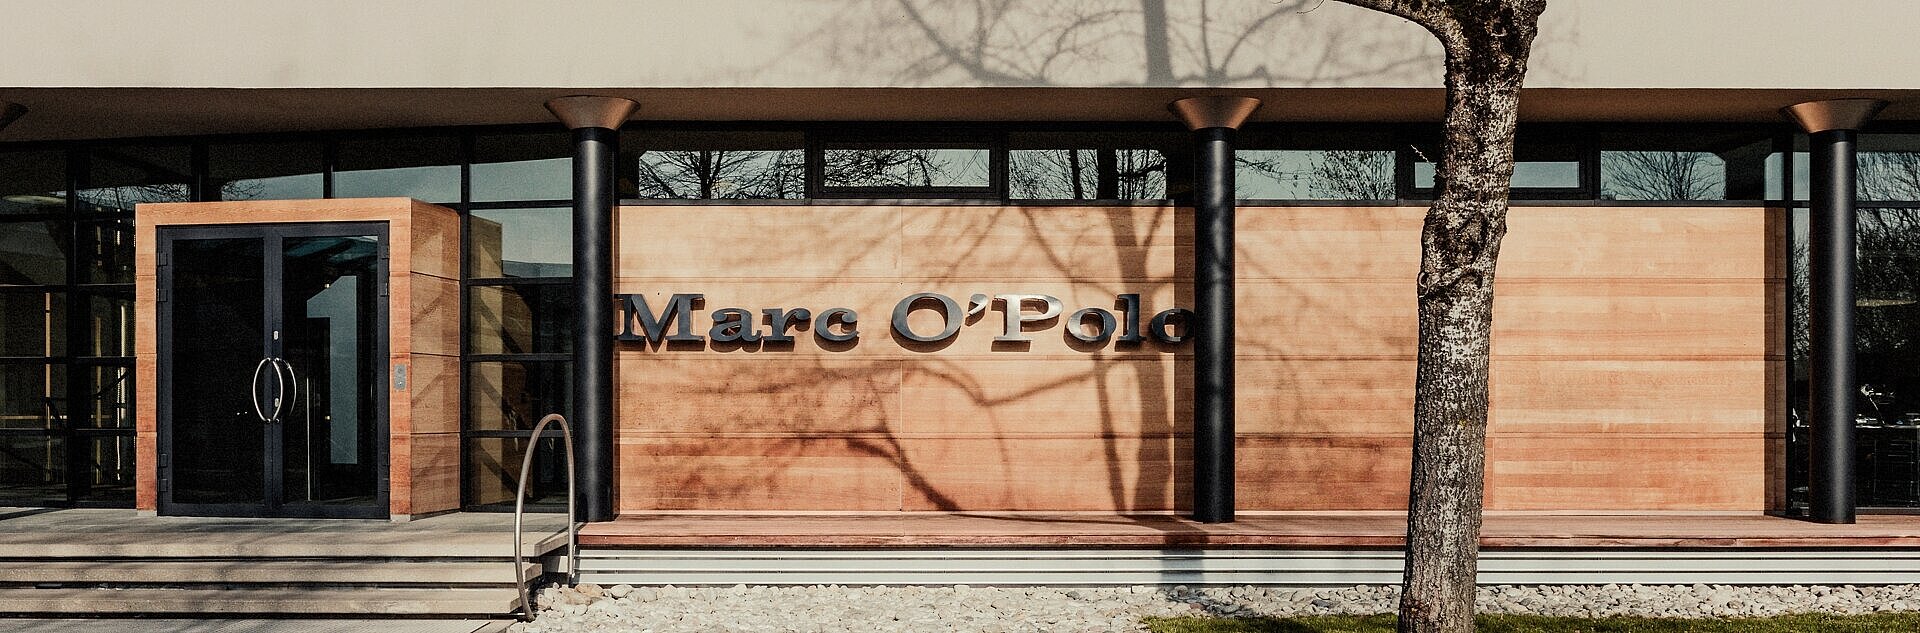 Gebäude Marc O Polo mit Schriftzug vorn, Holzfassade, Baum und Straße davor